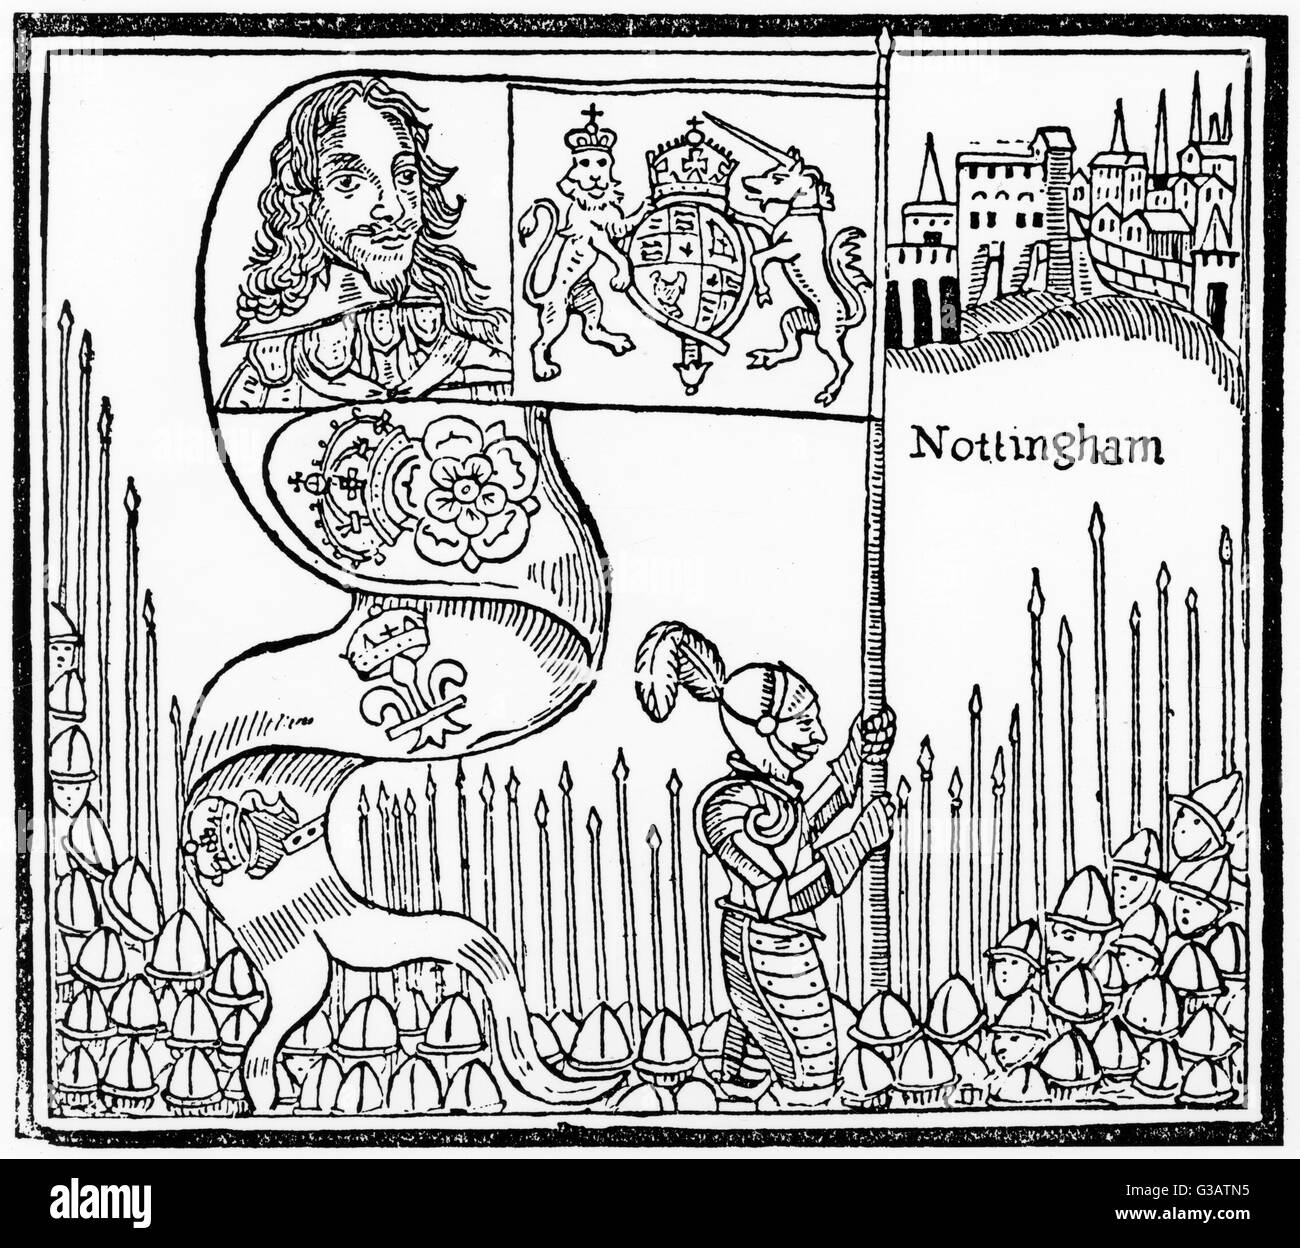 König Charles I seinen Maßstab an Nottingham, wirft signalisieren den Beginn des englischen Bürgerkriegs.     Datum: 22. August 1642 Stockfoto